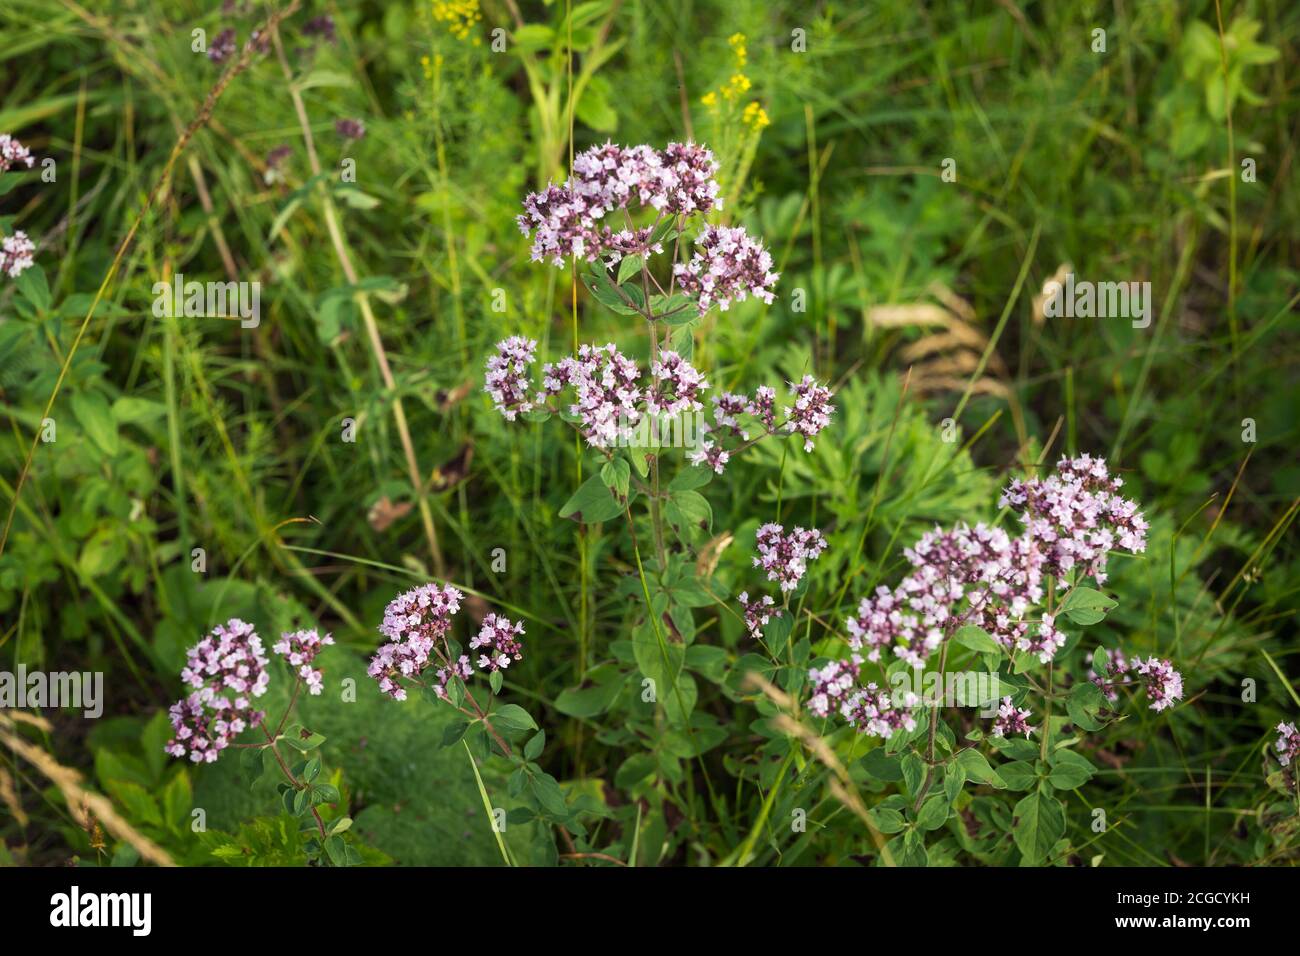 Heilpflanze common origanum (Origanum vulgare) wächst auf einer grünen Wiese im Sommerwald in der natürlichen Umgebung. Stockfoto